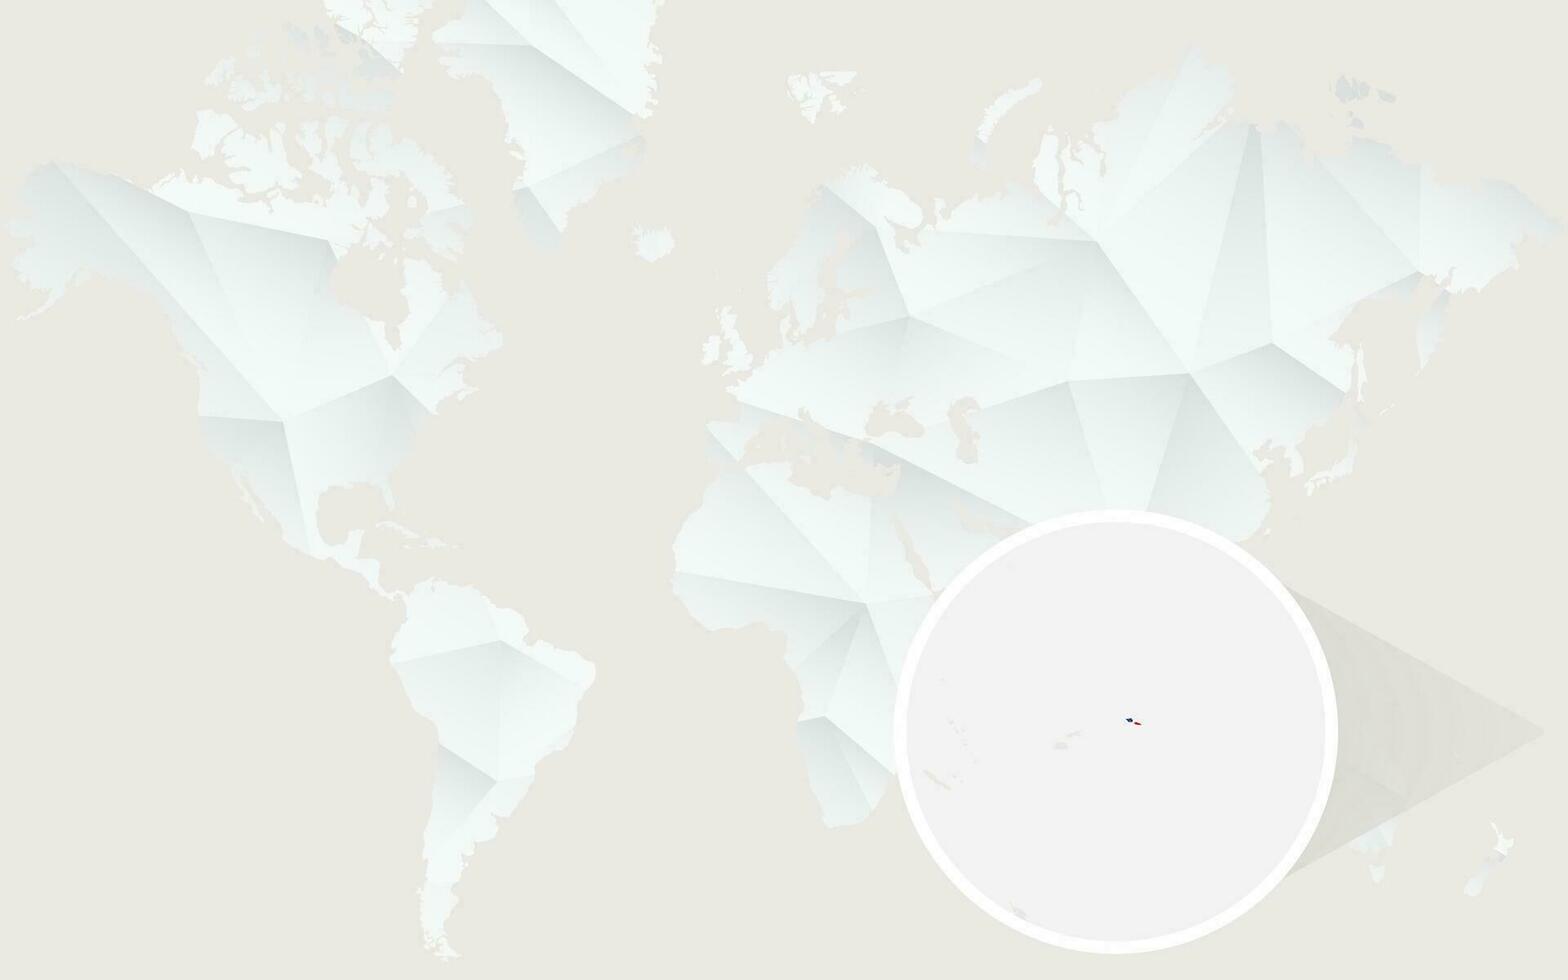 samoa mapa com bandeira dentro contorno em branco poligonal mundo mapa. vetor